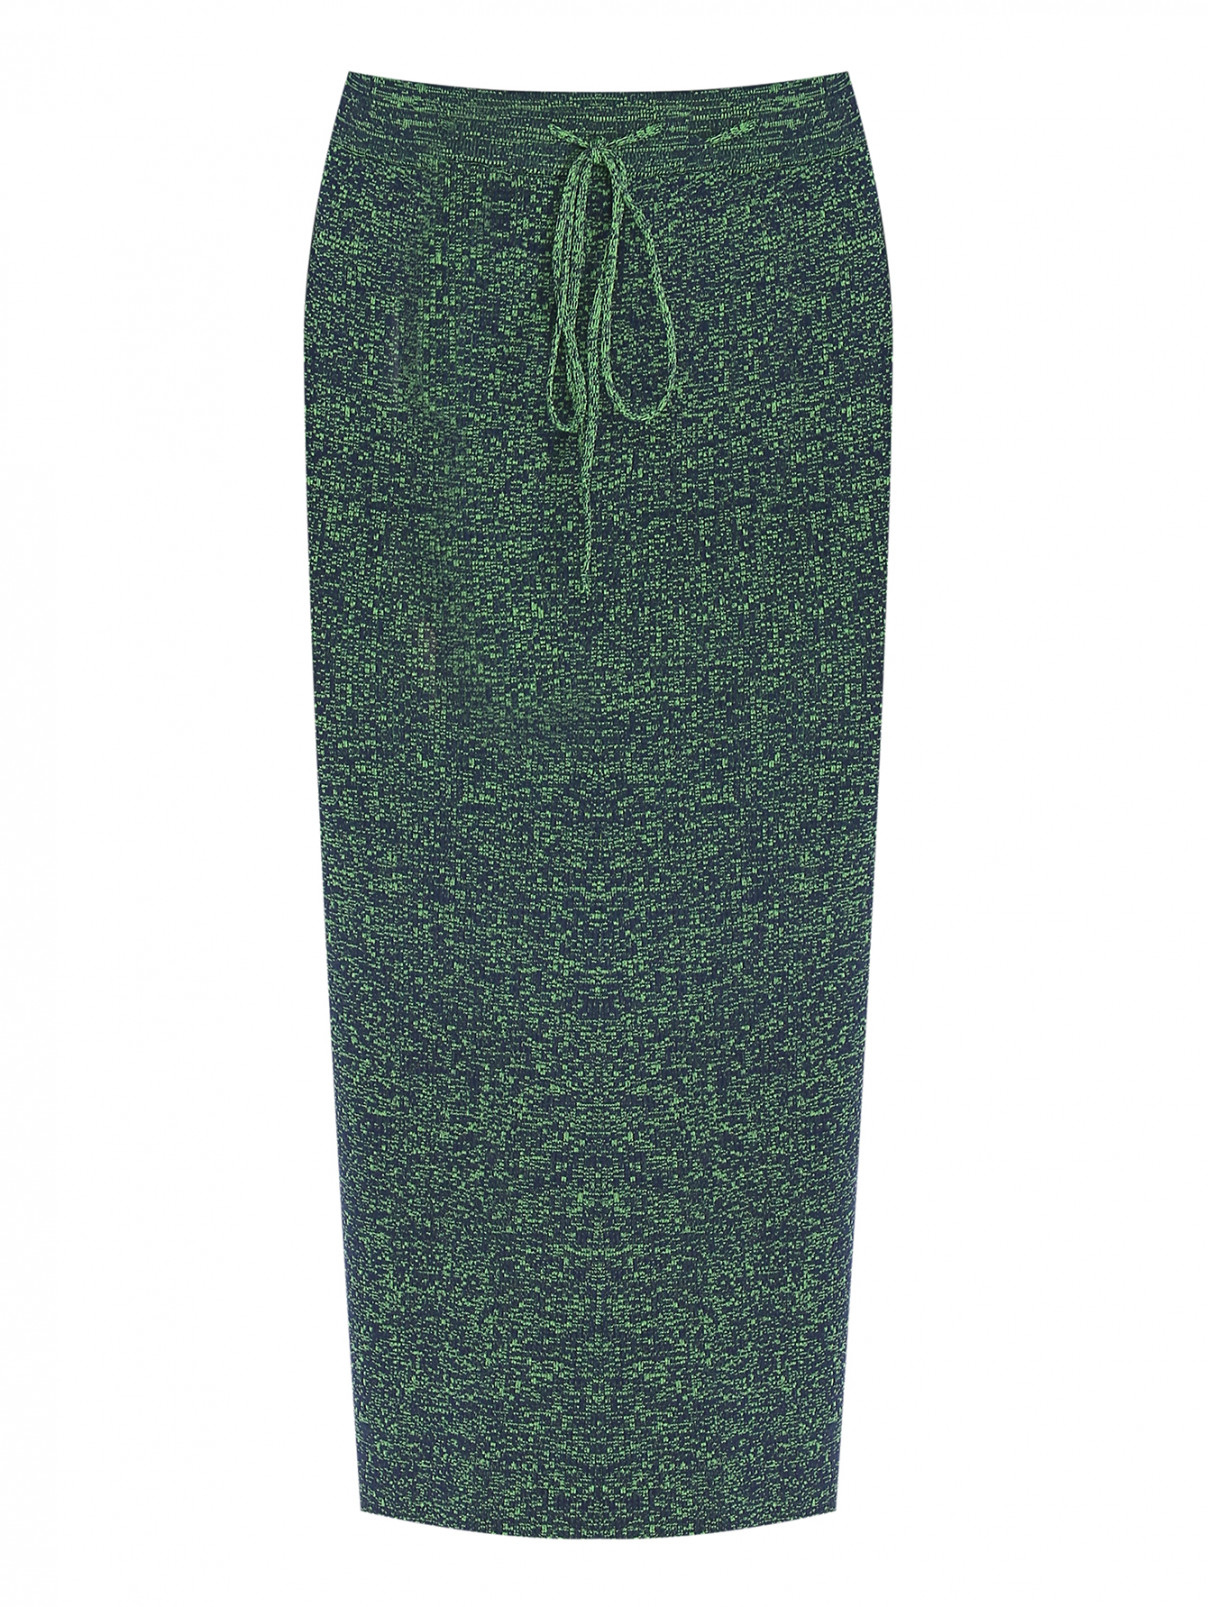 Трикотажная юбка-миди Essentiel Antwerp  –  Общий вид  – Цвет:  Зеленый